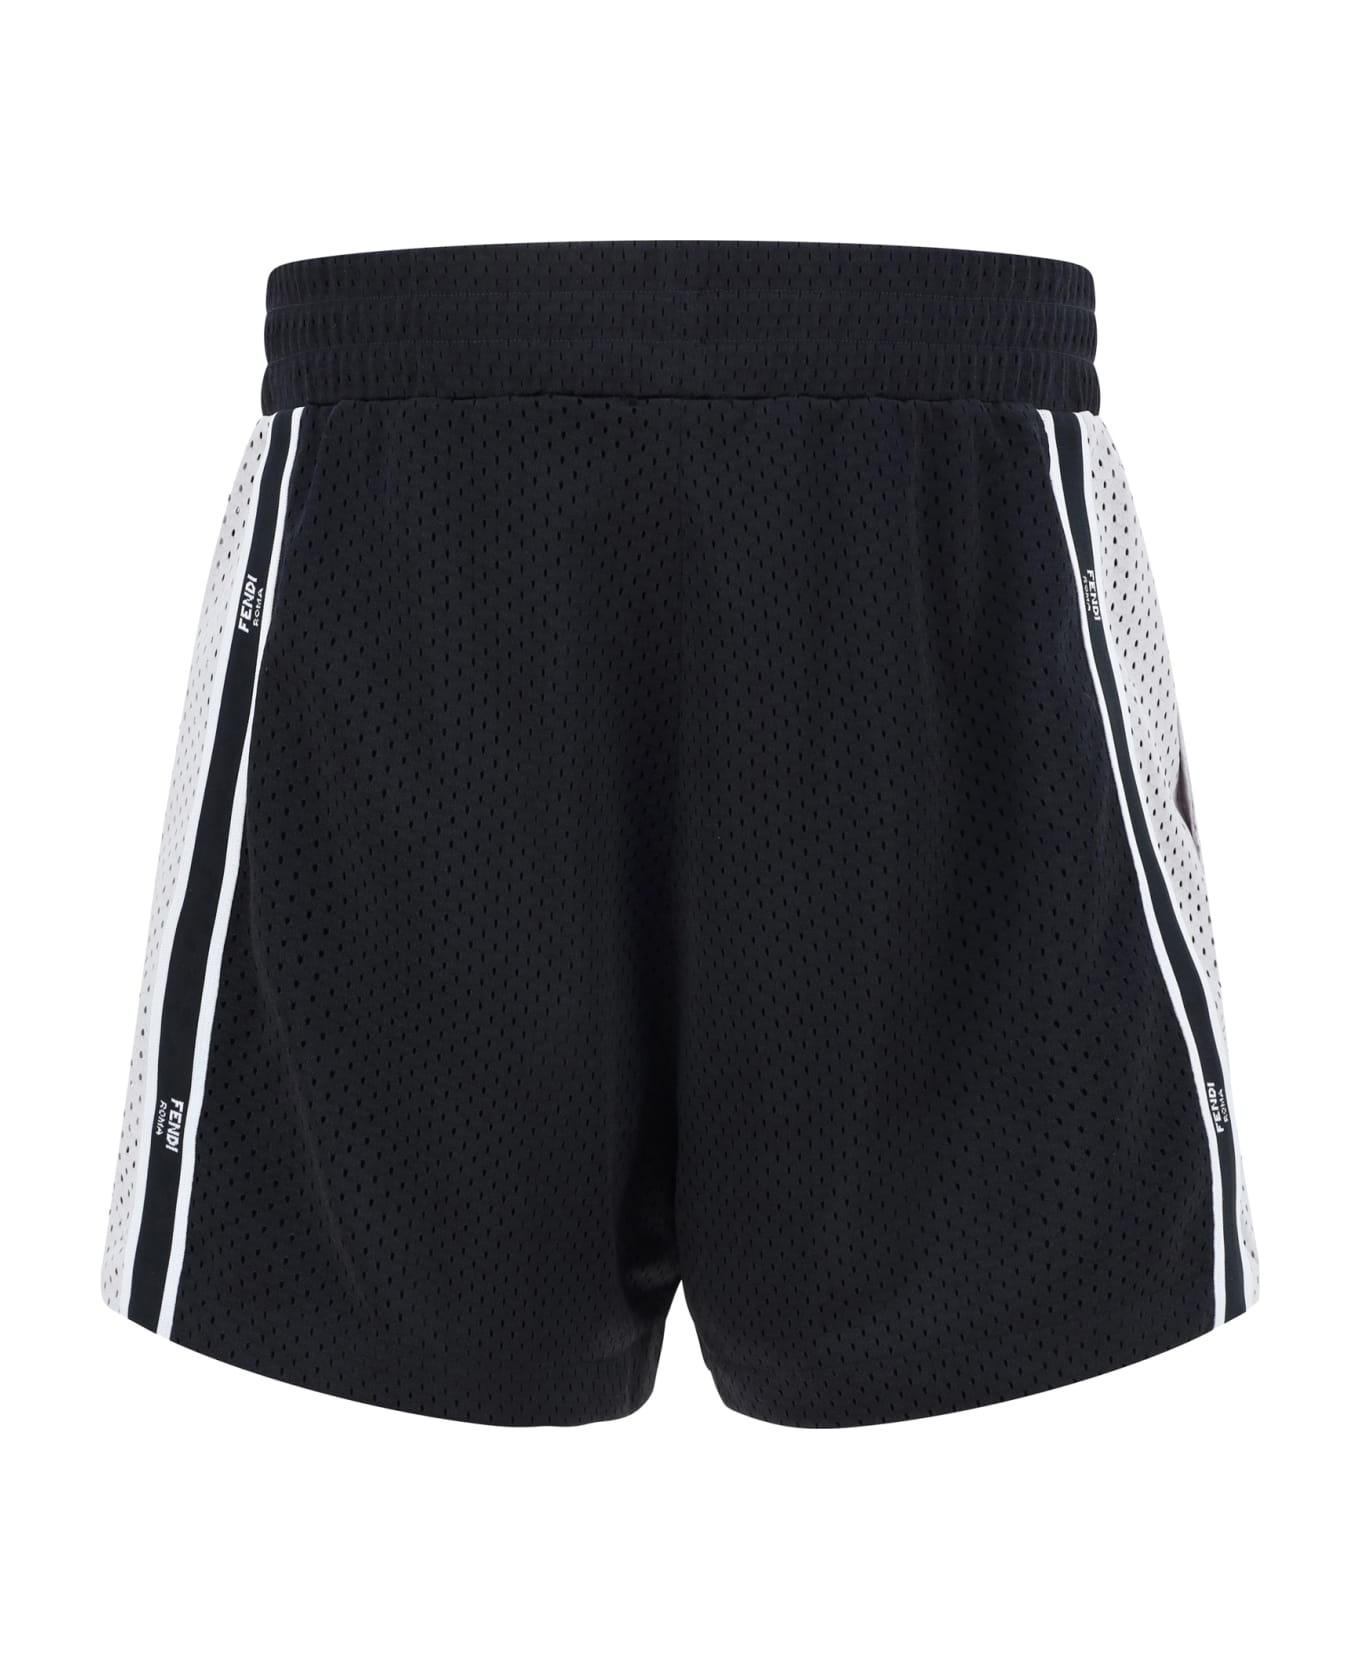 Fendi Tech Mesh Bermuda Shorts - Black/silver